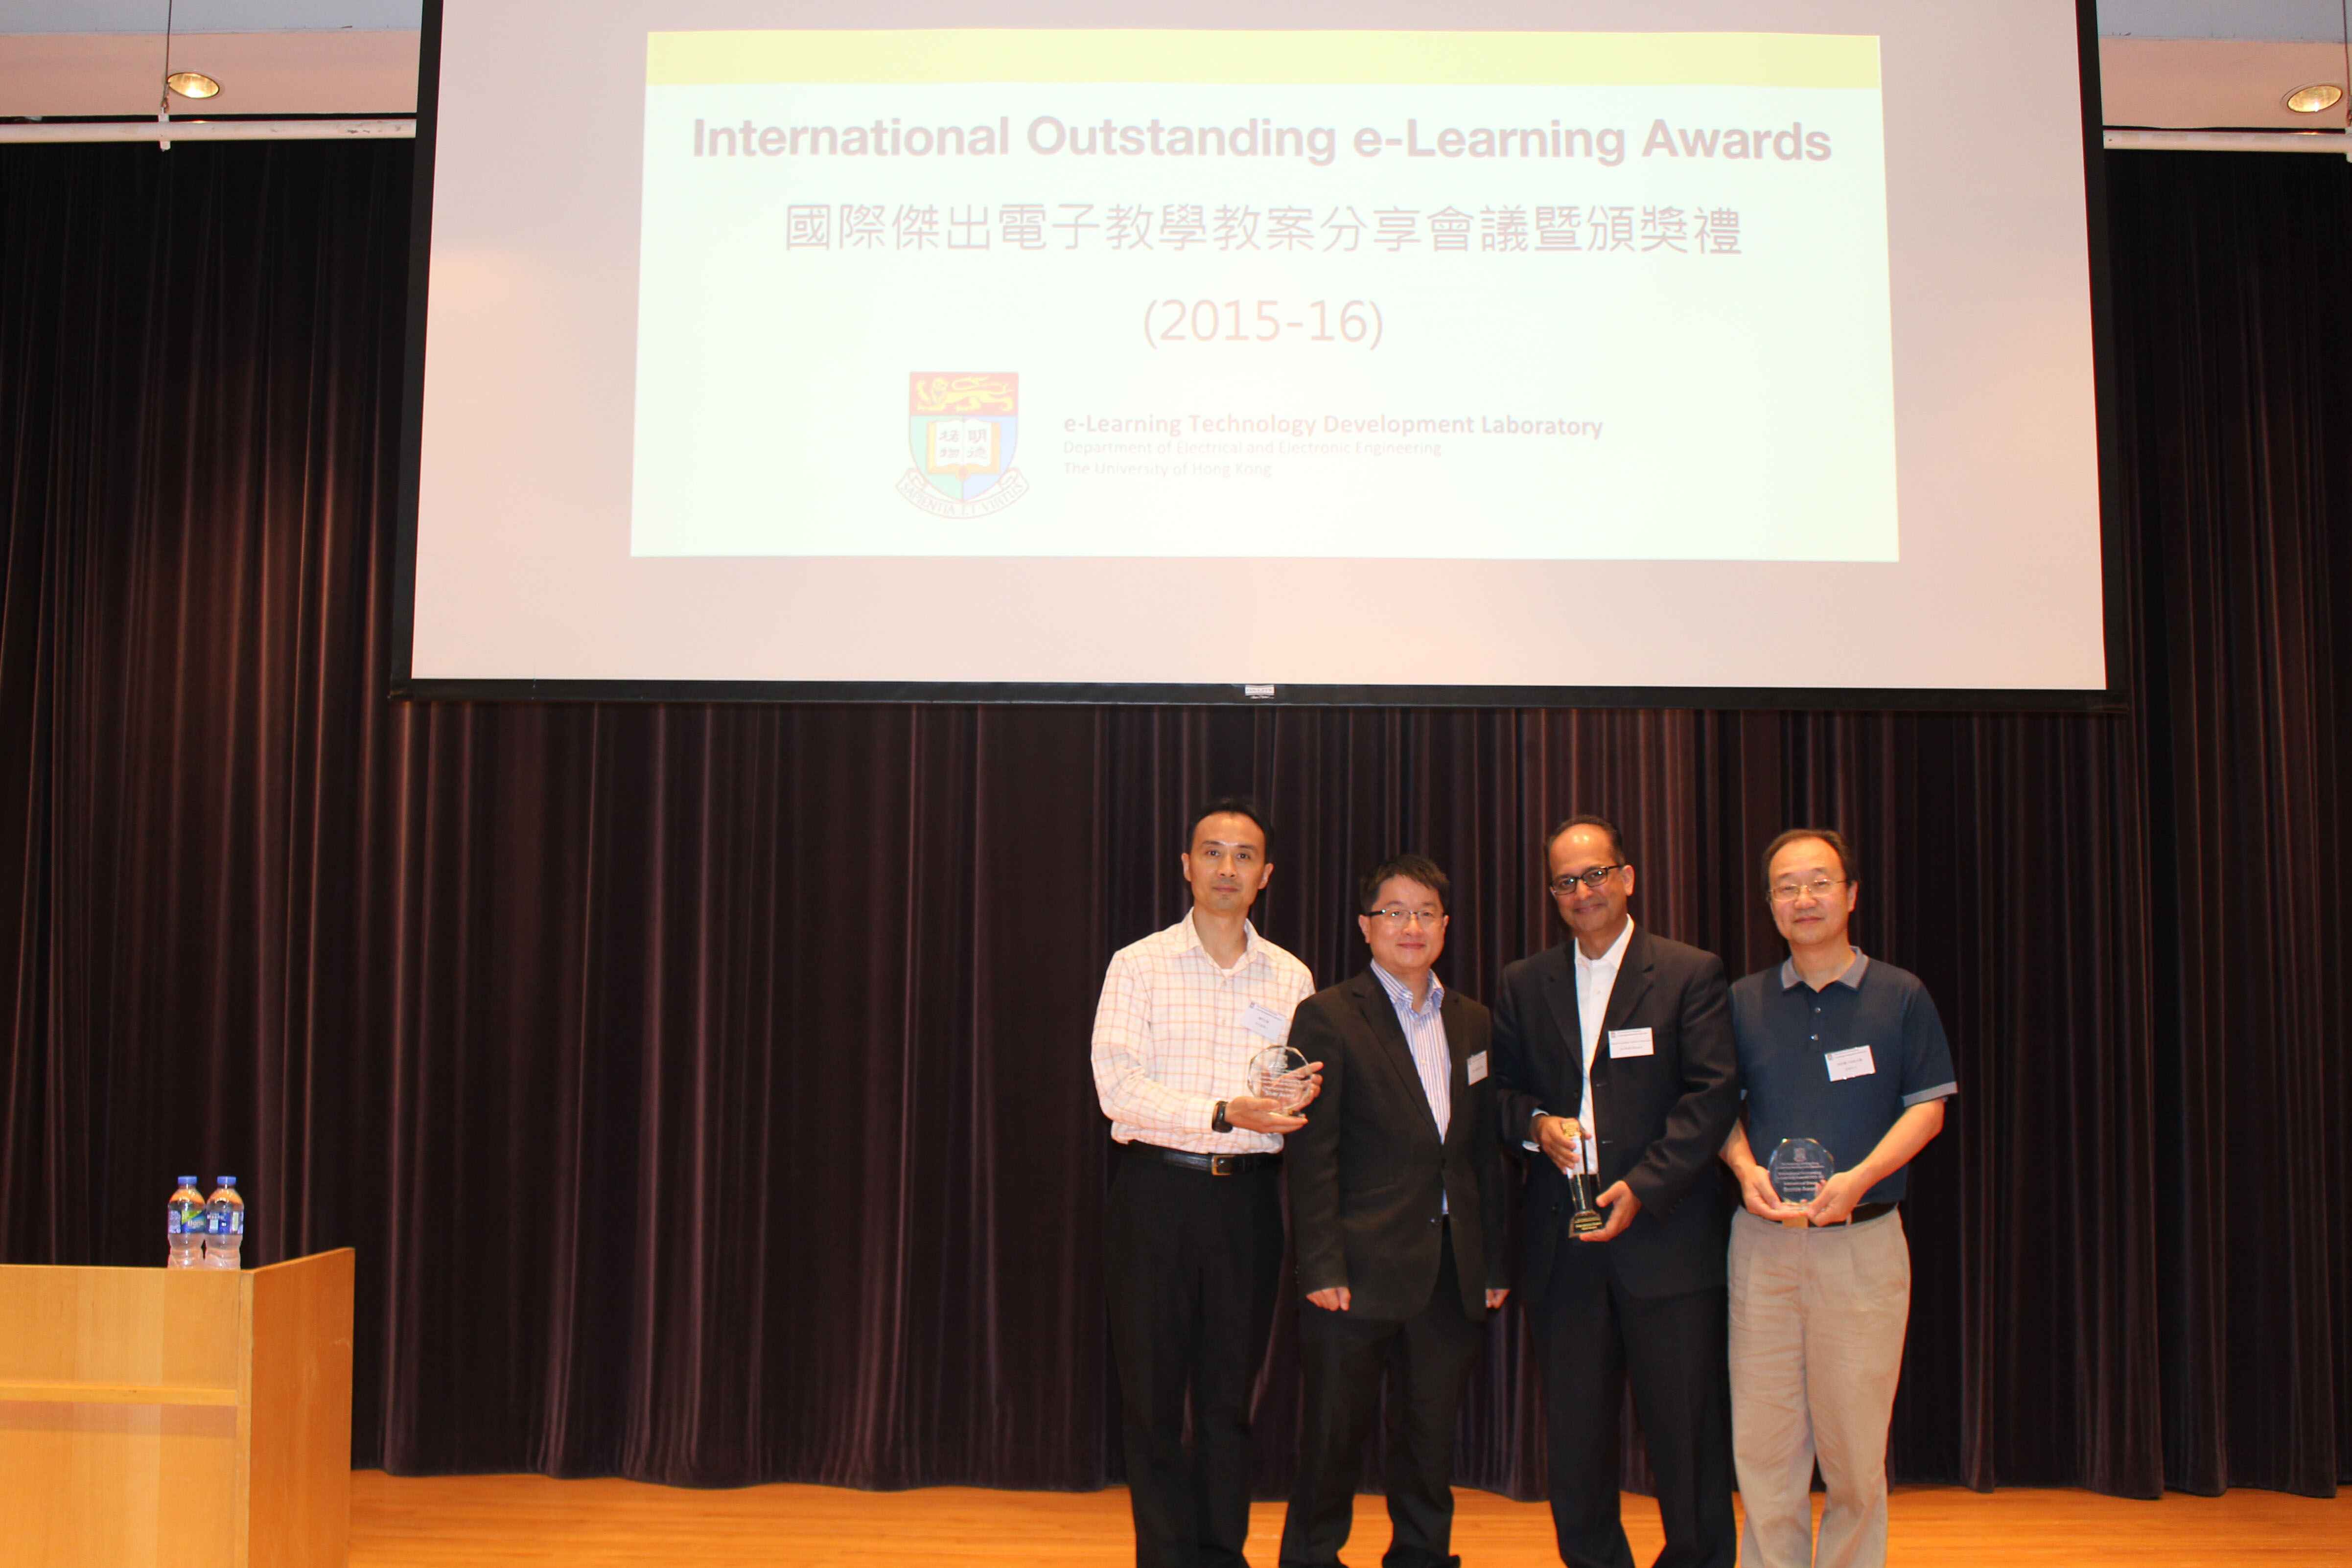 澳大學者獲國際傑出電子教學獎